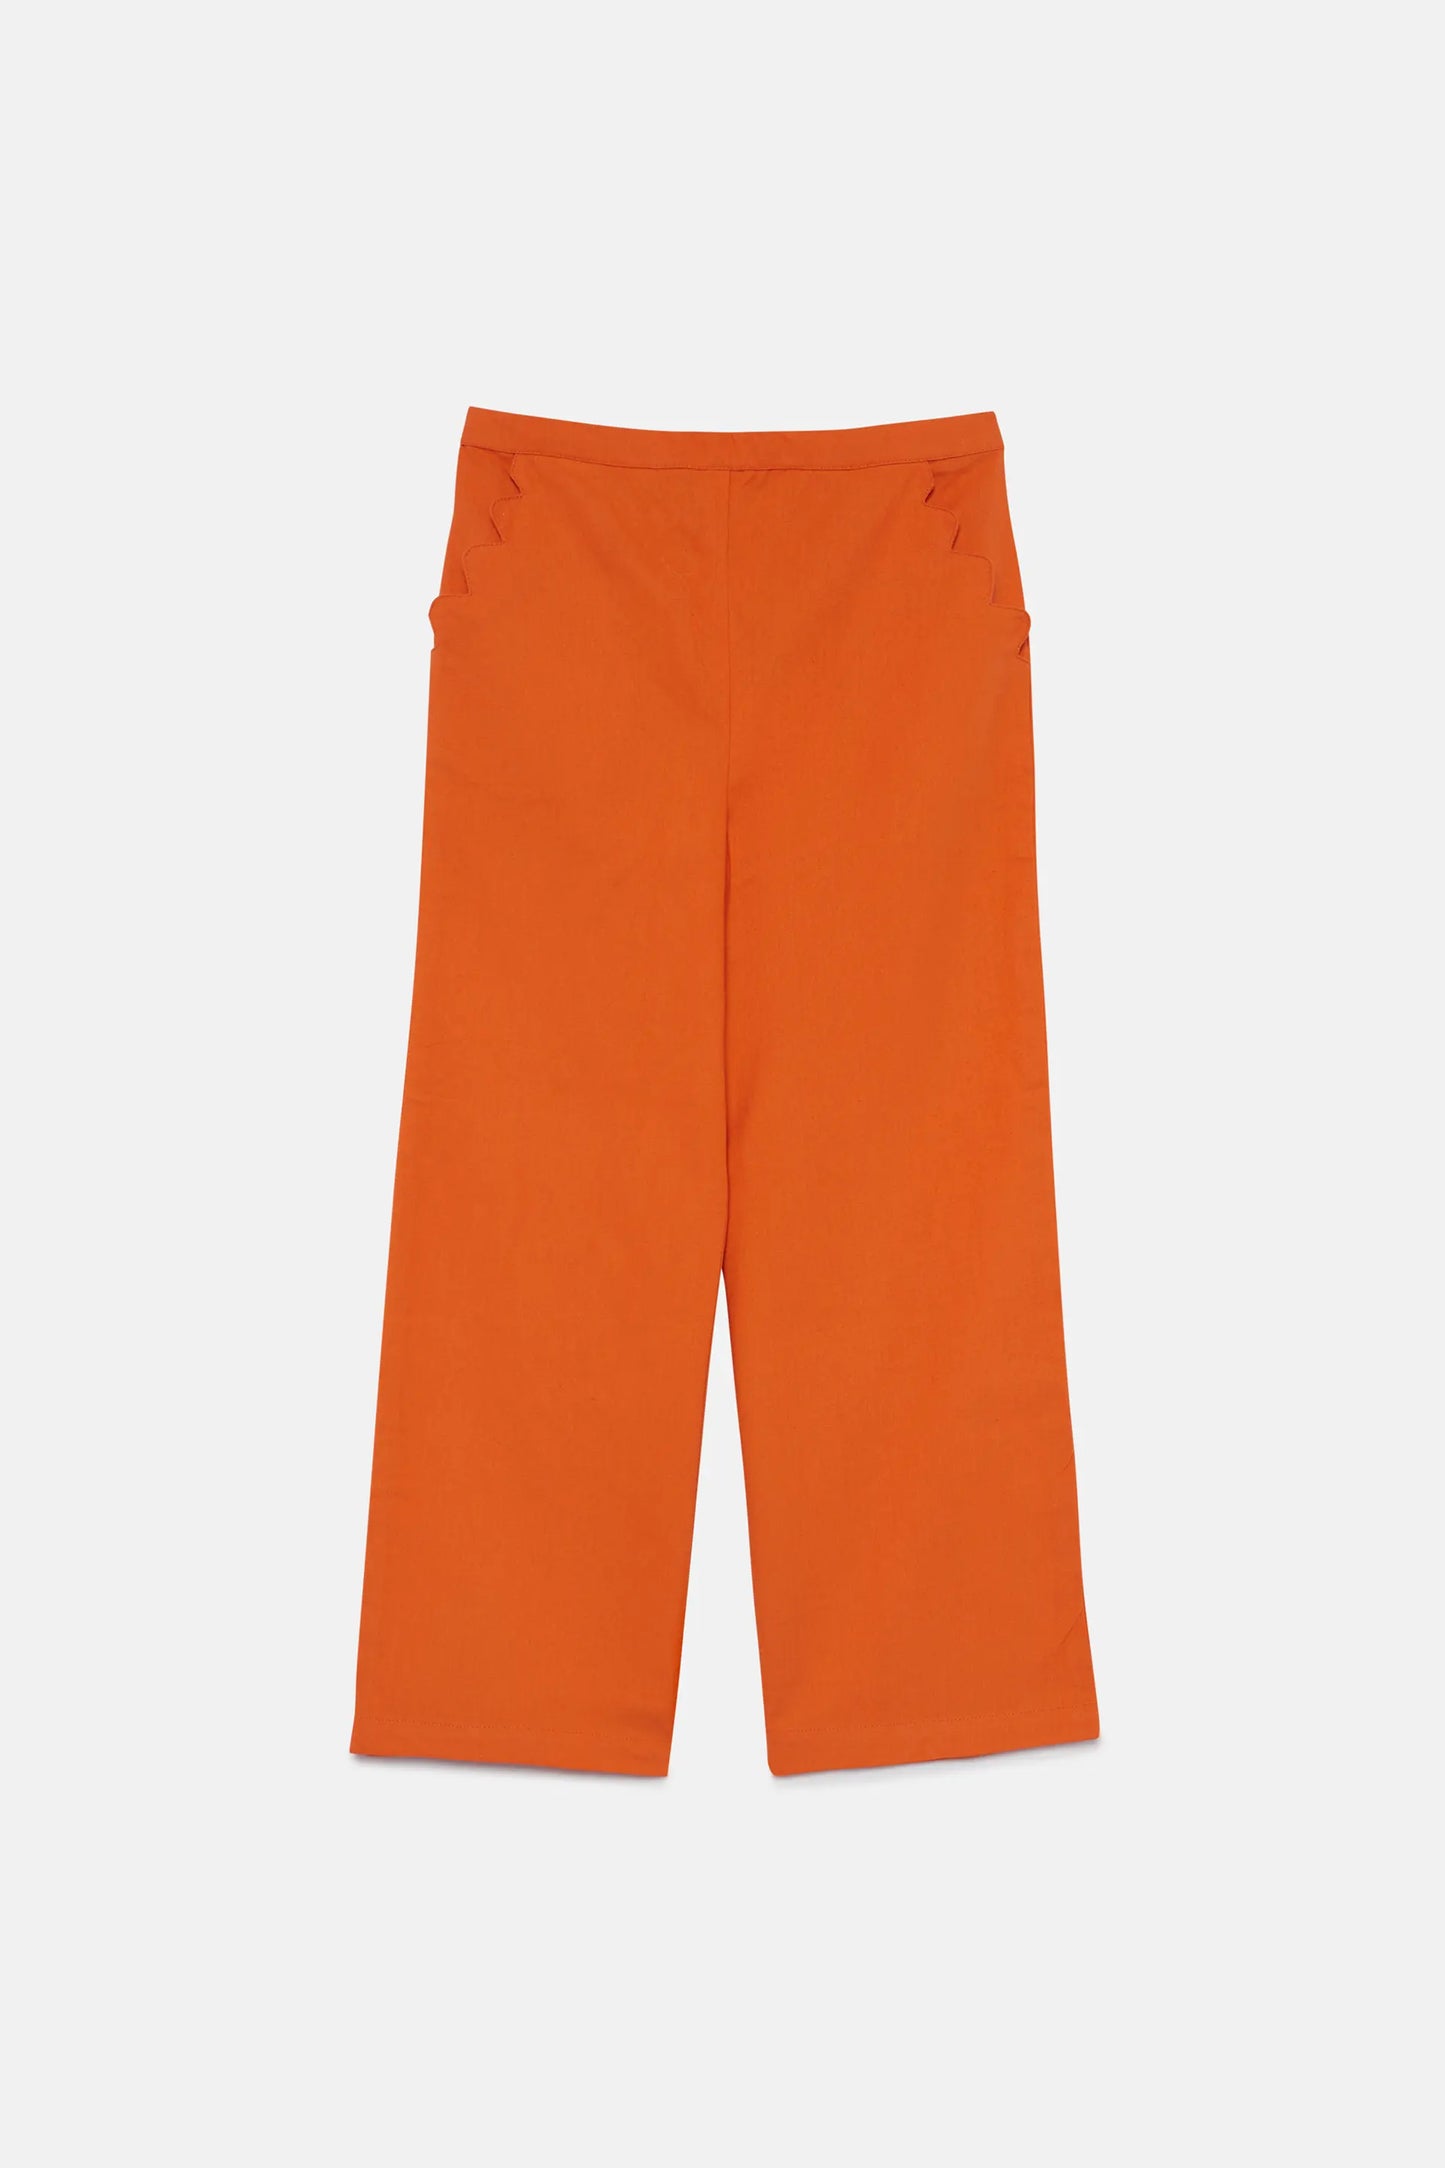 Pantalón de niña recto naranja